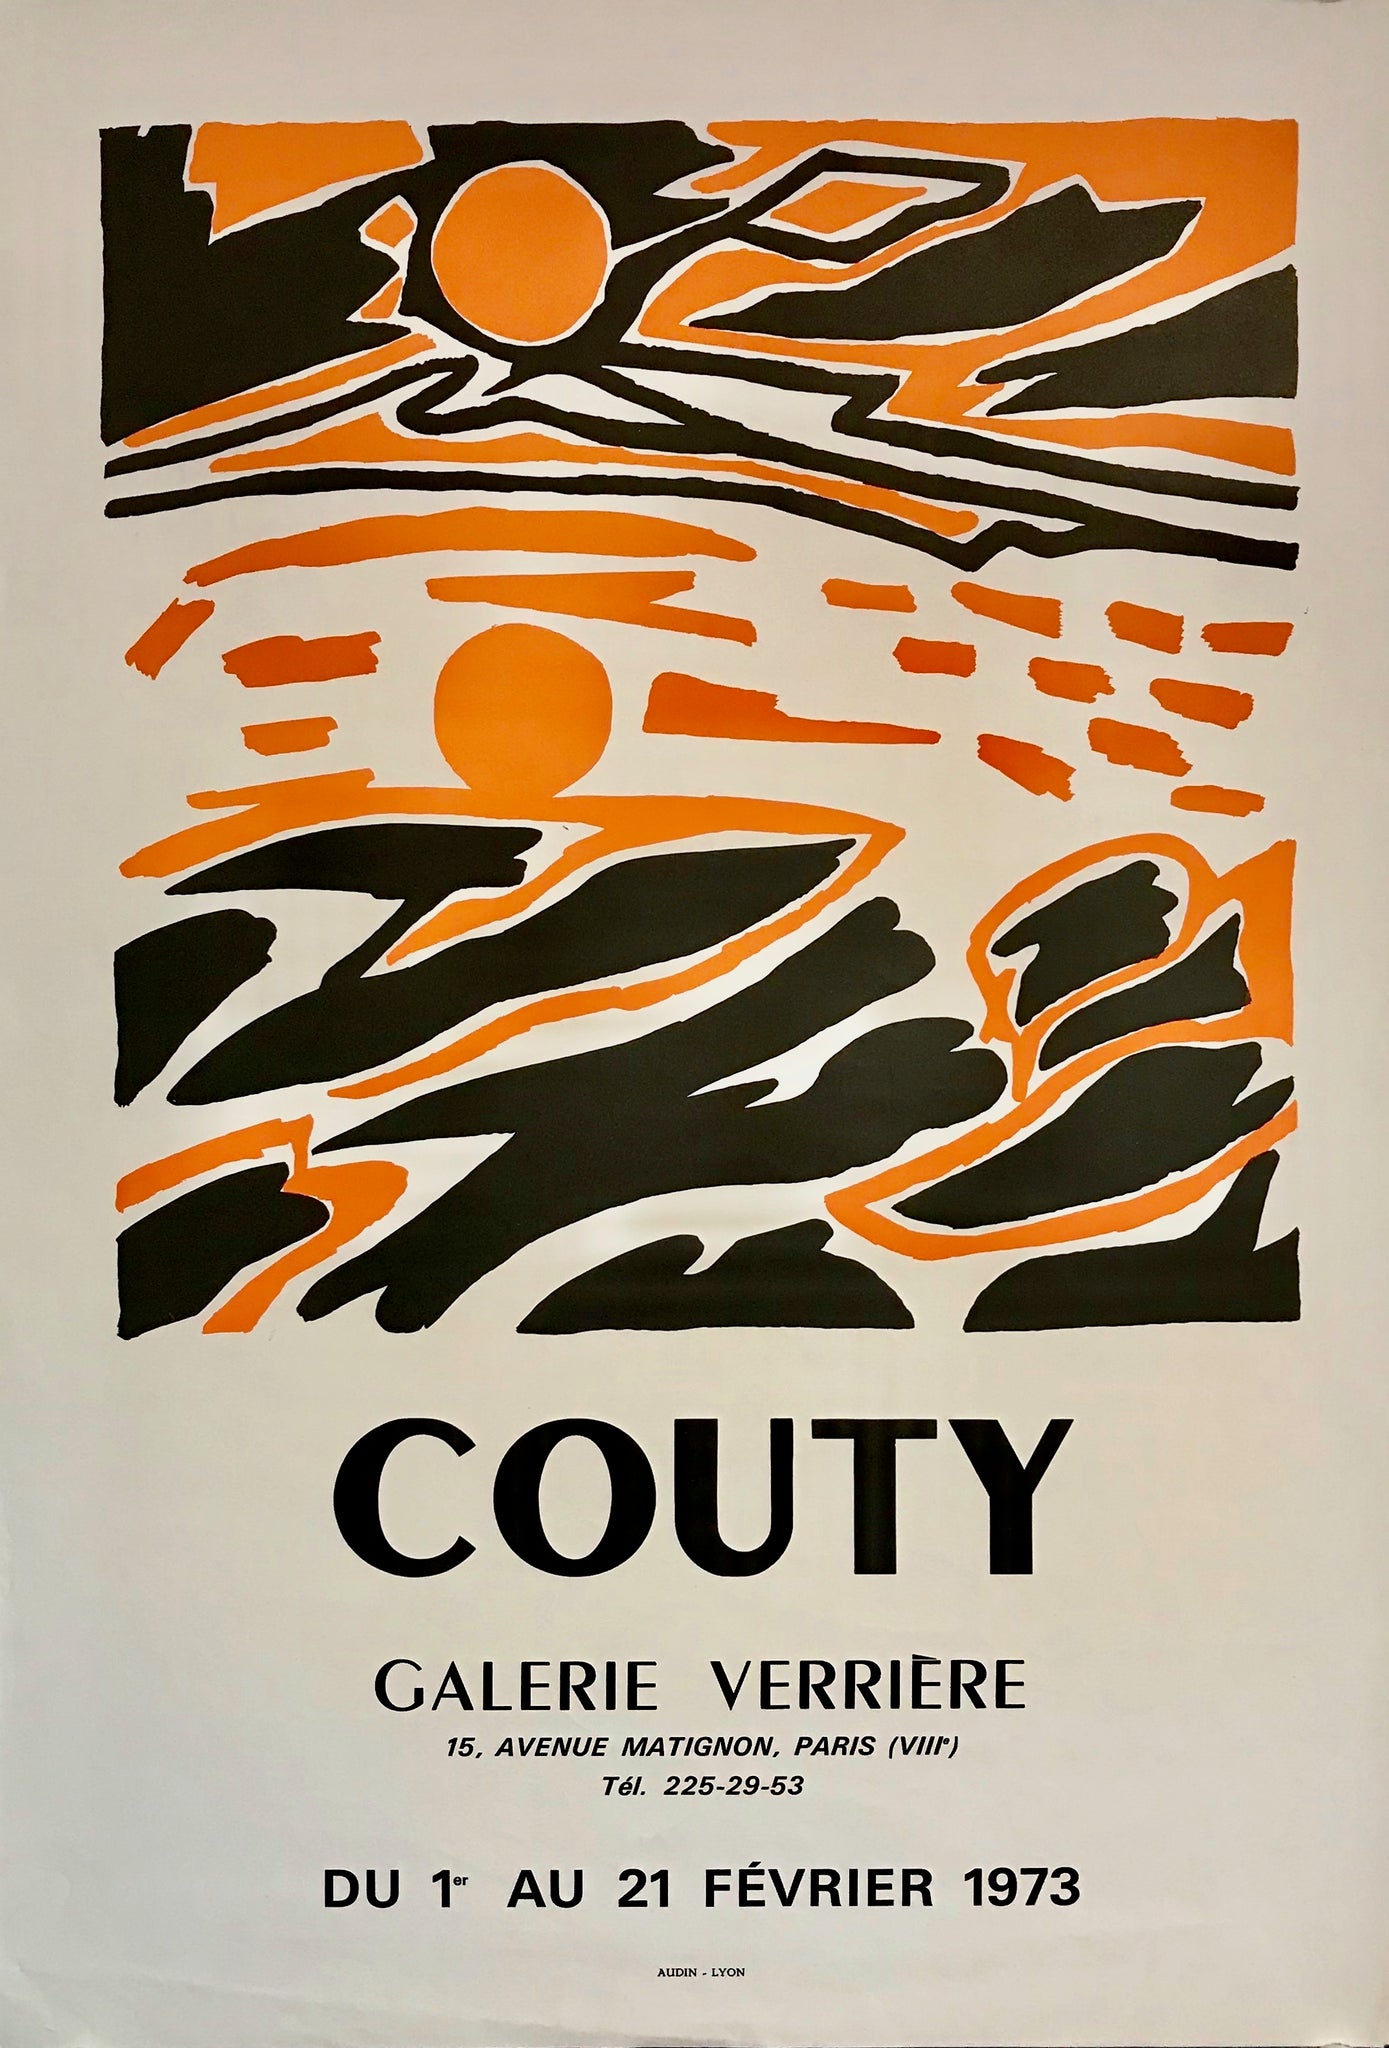  Affiche réalisée à l'occasion de l'Exposition Couty,   à la Galerie Verrière du 1er au 21 Février 1973